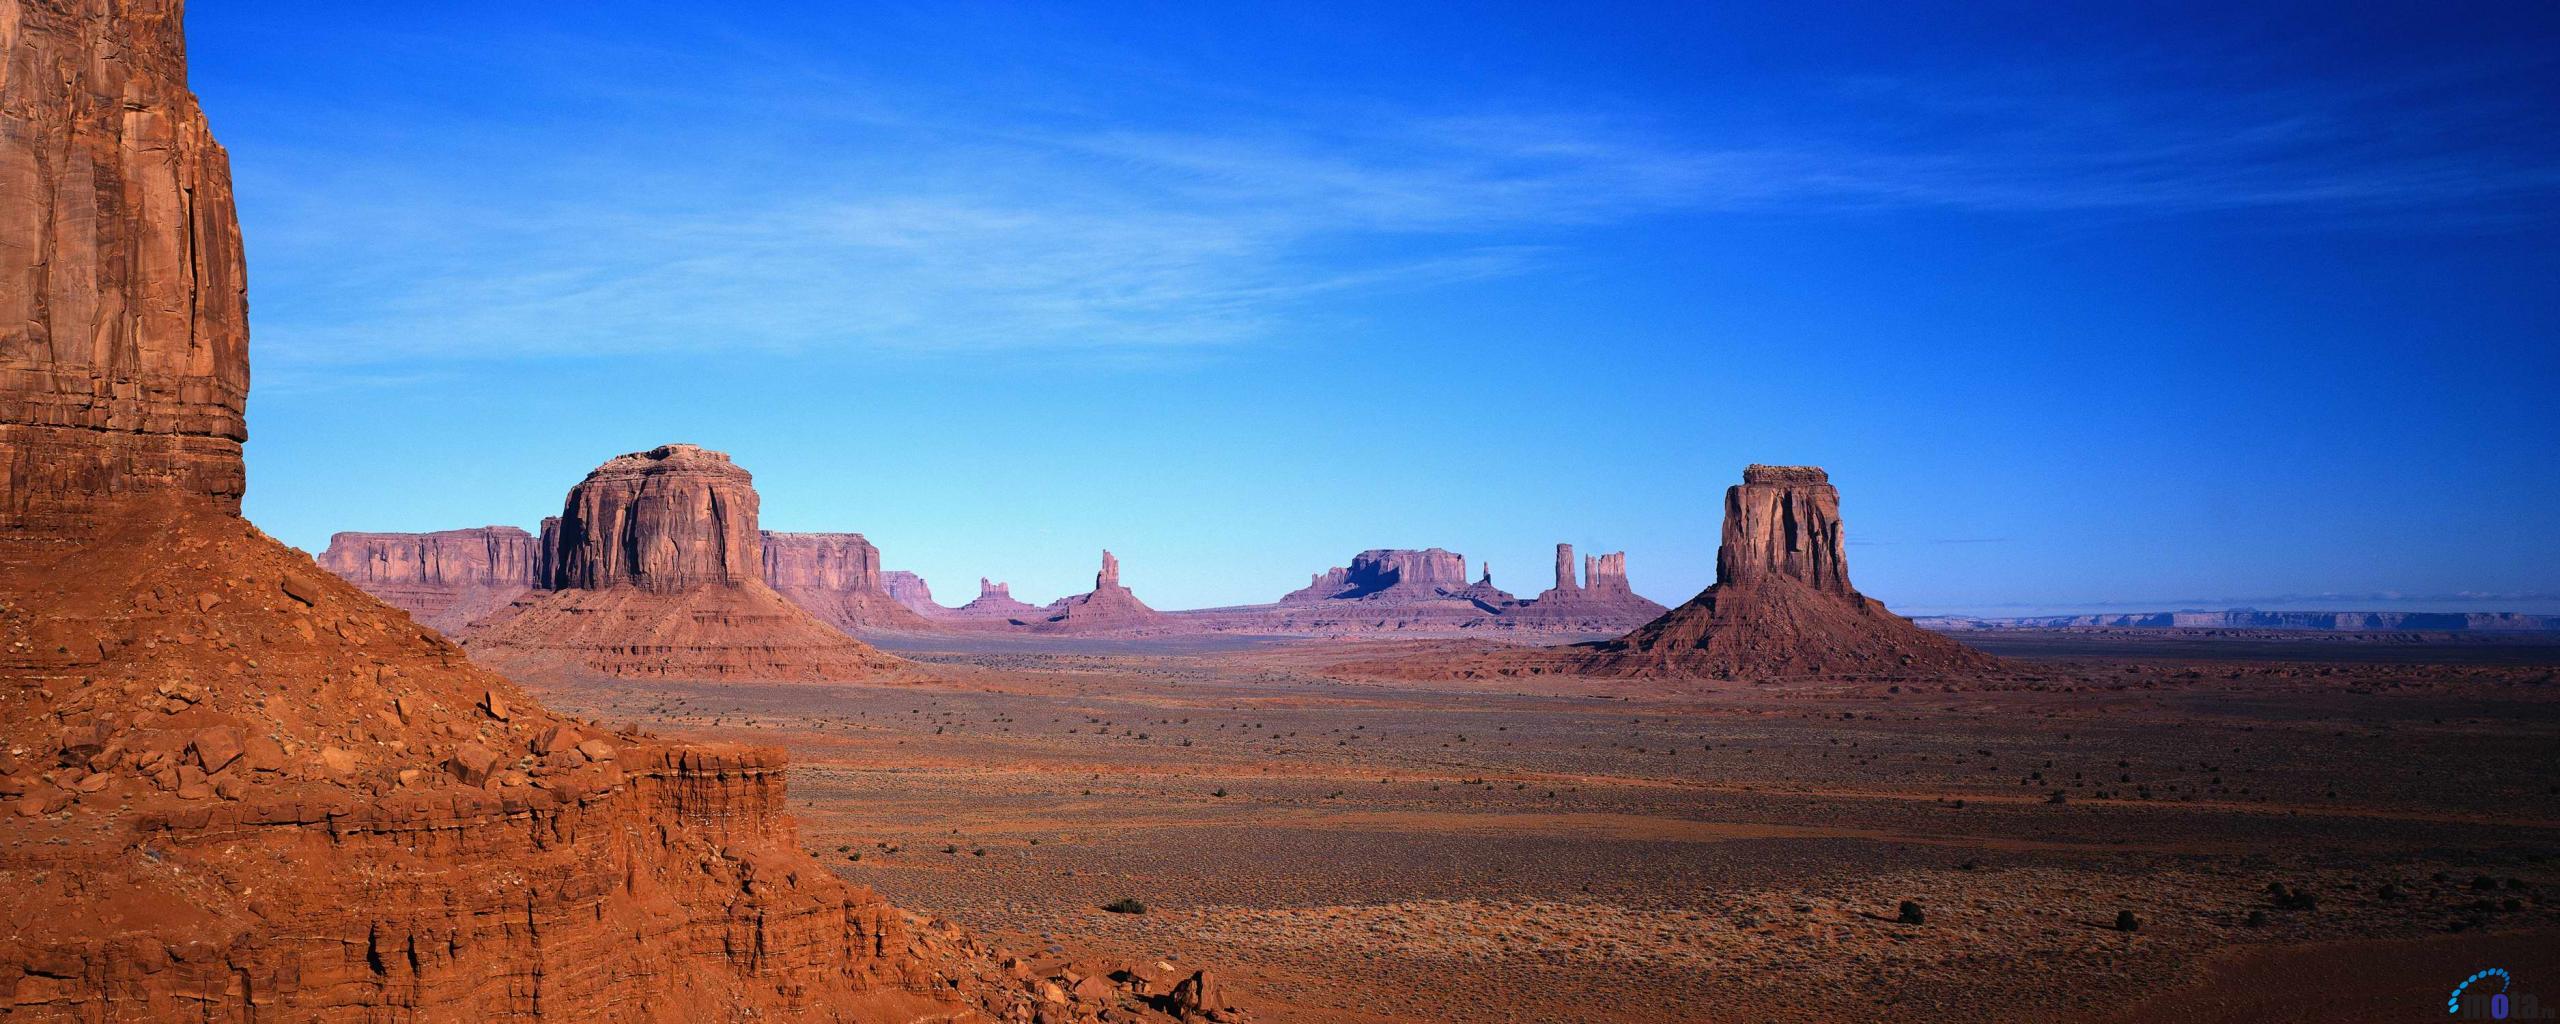 دره بقعه (Monument Valley)